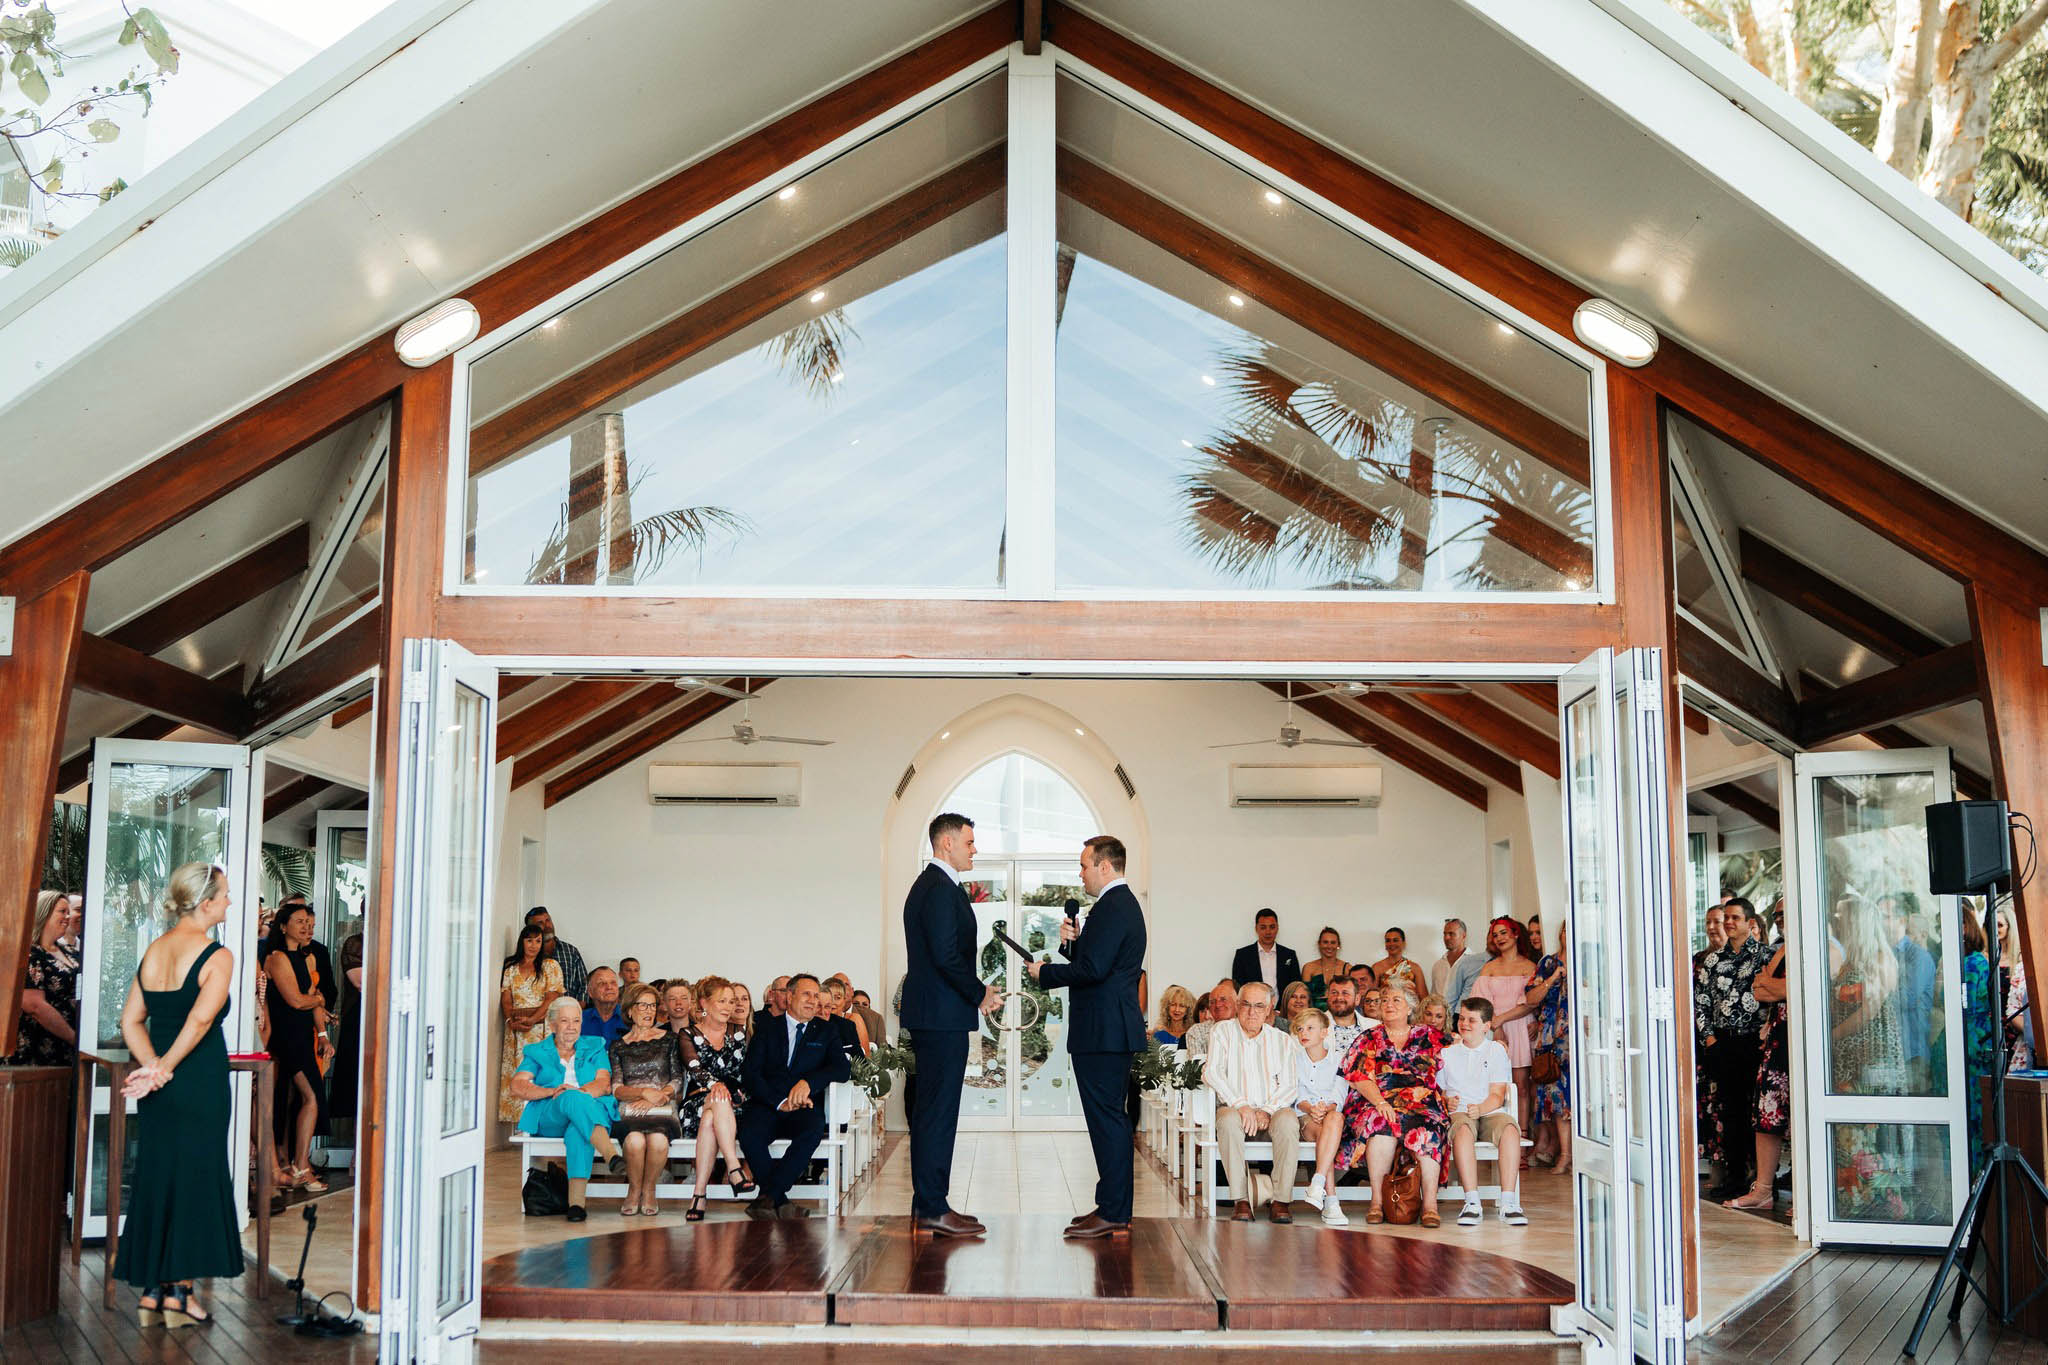 Couple marrying at Alamanda chapel